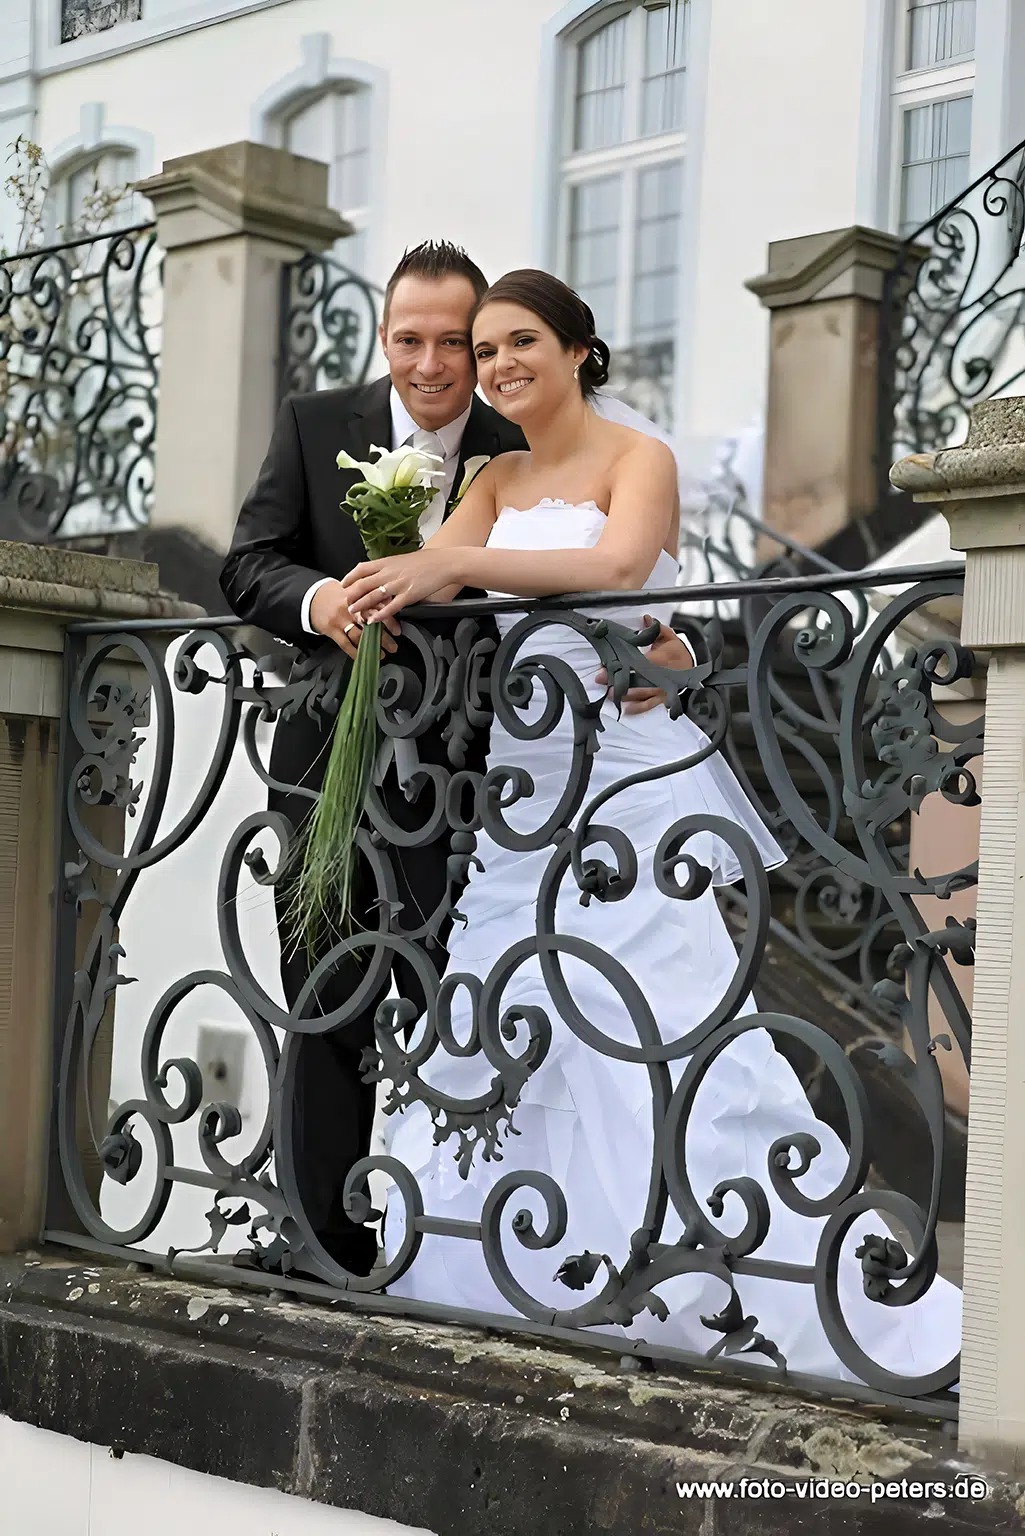 Hochzeitspaar steht eng aneinander gelehnt, während es sich kopf an kopf vor einem Geländer positioniert und in die Kamera schaut.